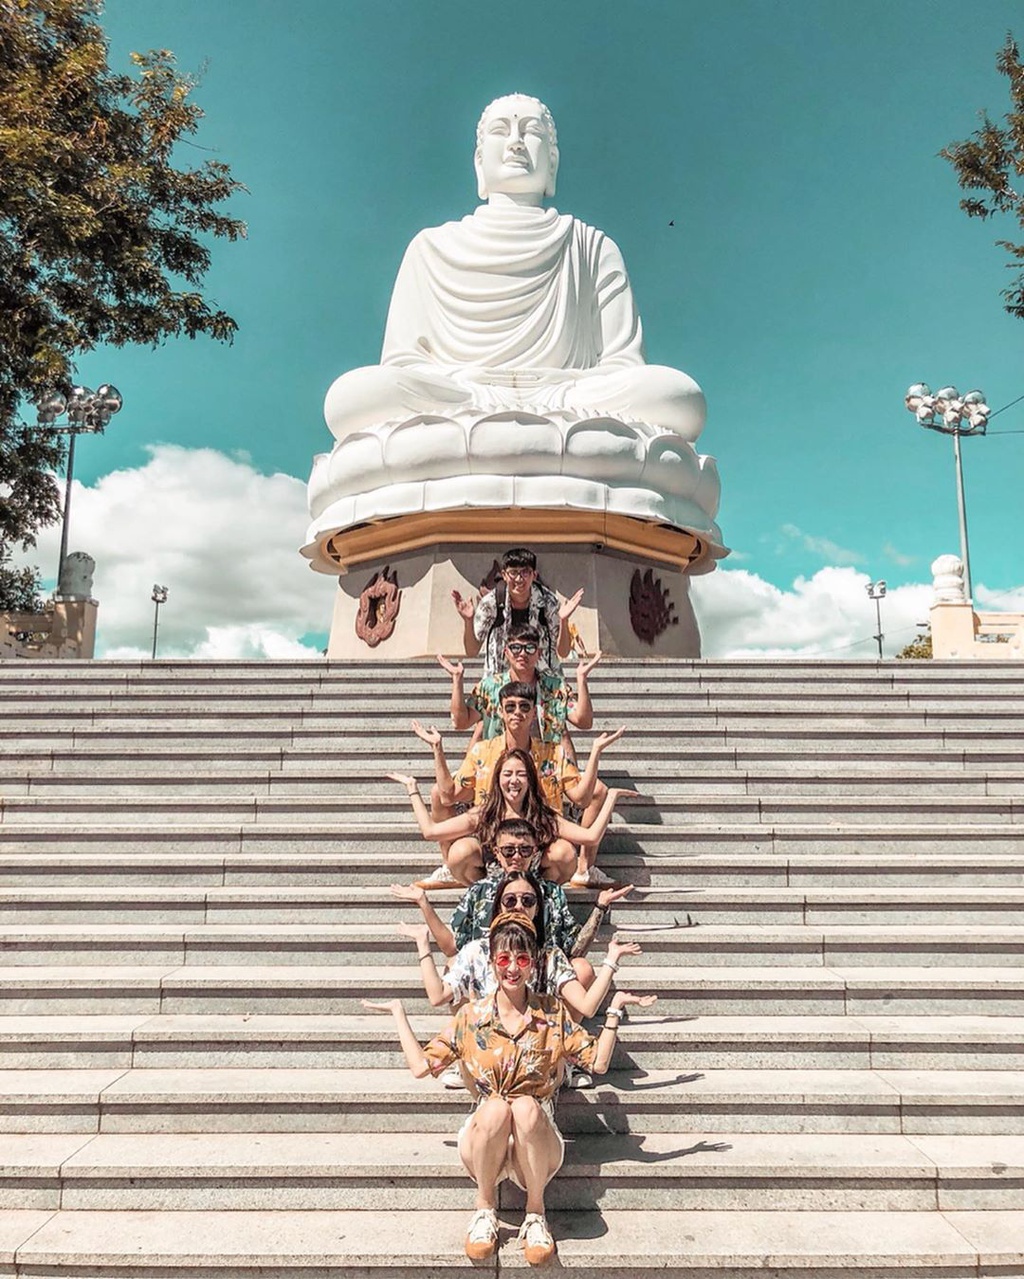 Chùa Long Sơn Nha Trang - Choáng ngợp với vẻ đẹp của bức tượng Phật trắng lớn nhất tại Việt Nam 13